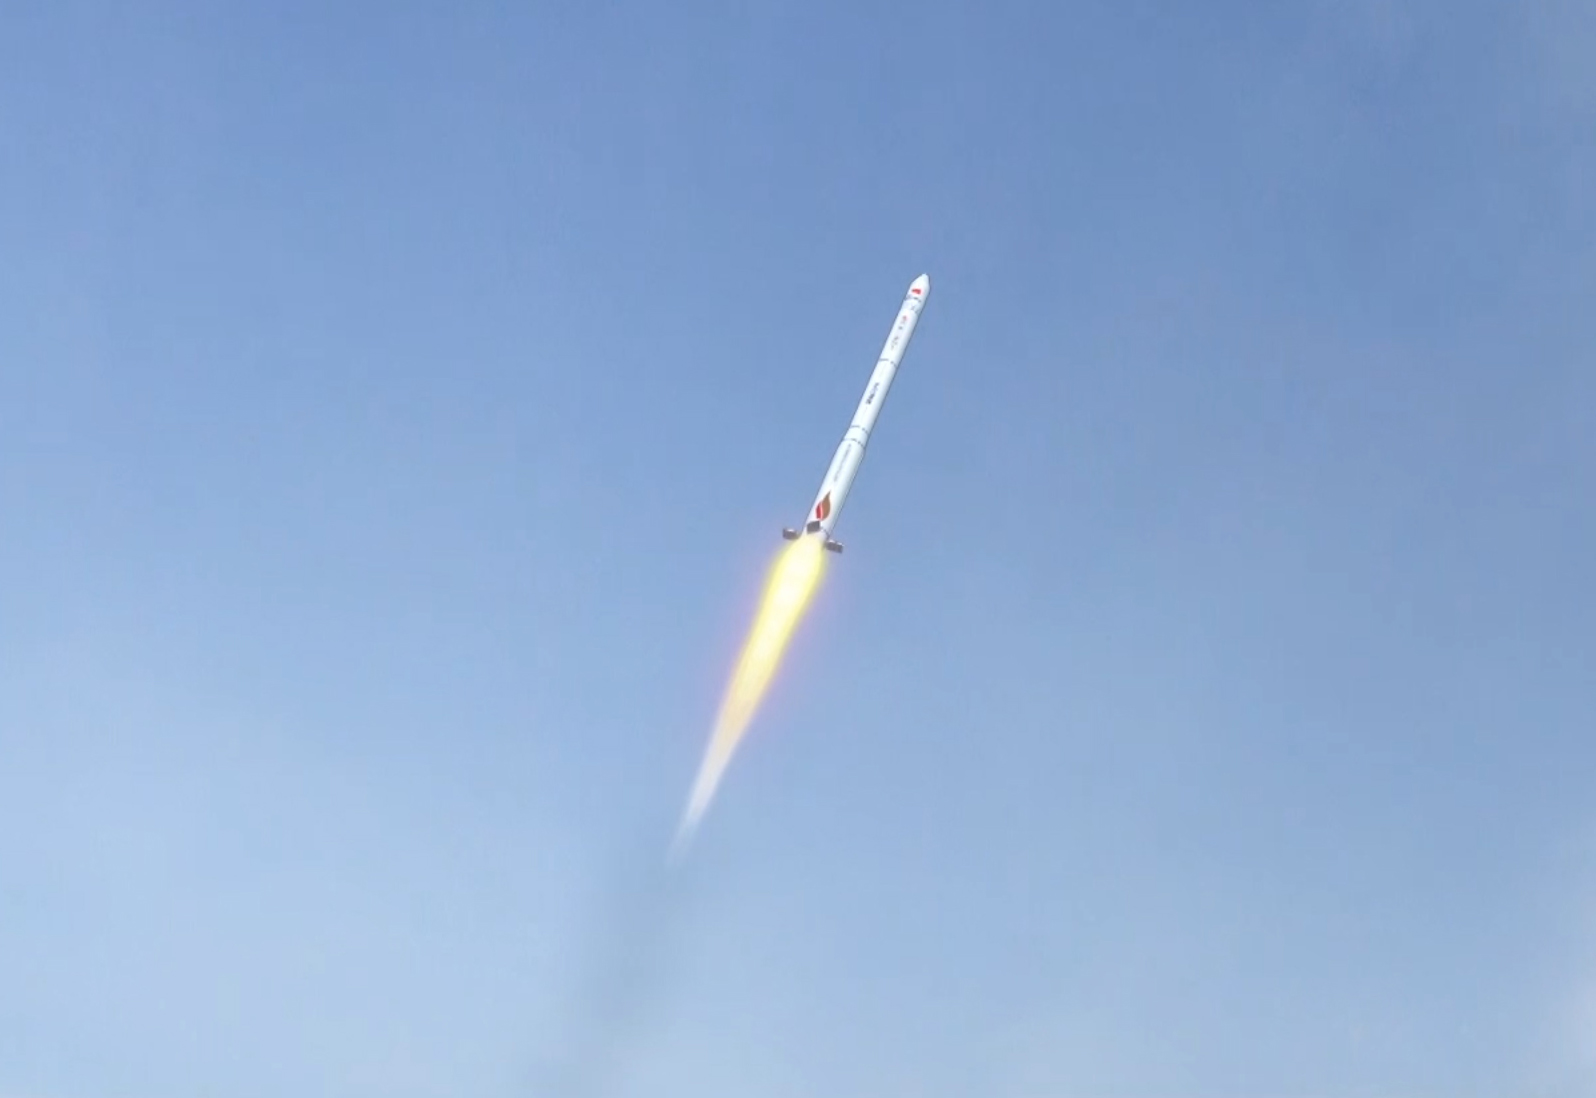 星际荣耀首枚运载火箭将于 6 月入轨发射